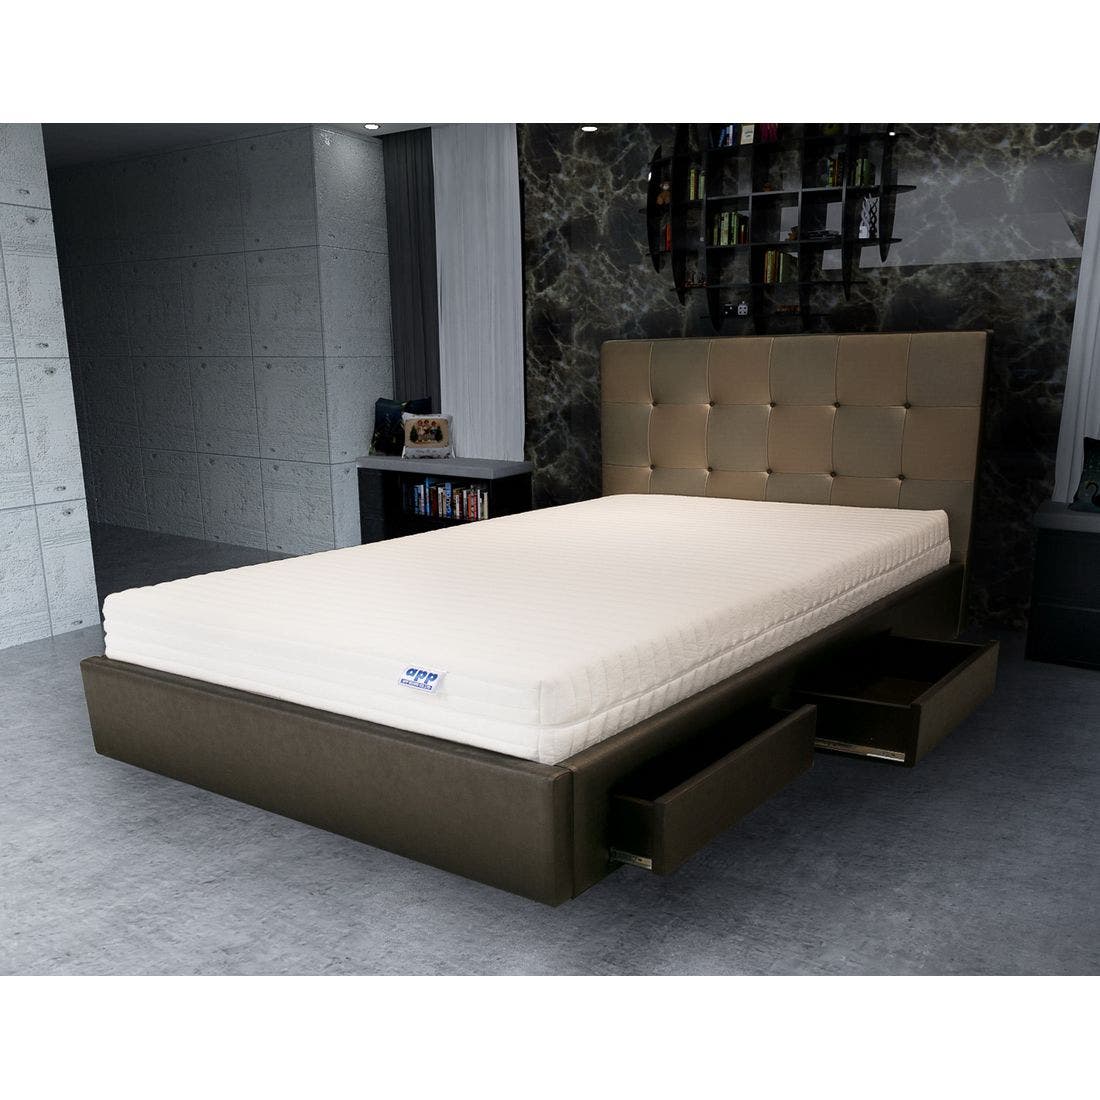 39001663-mattress-bedding-mattresses-latex-mattresses-31